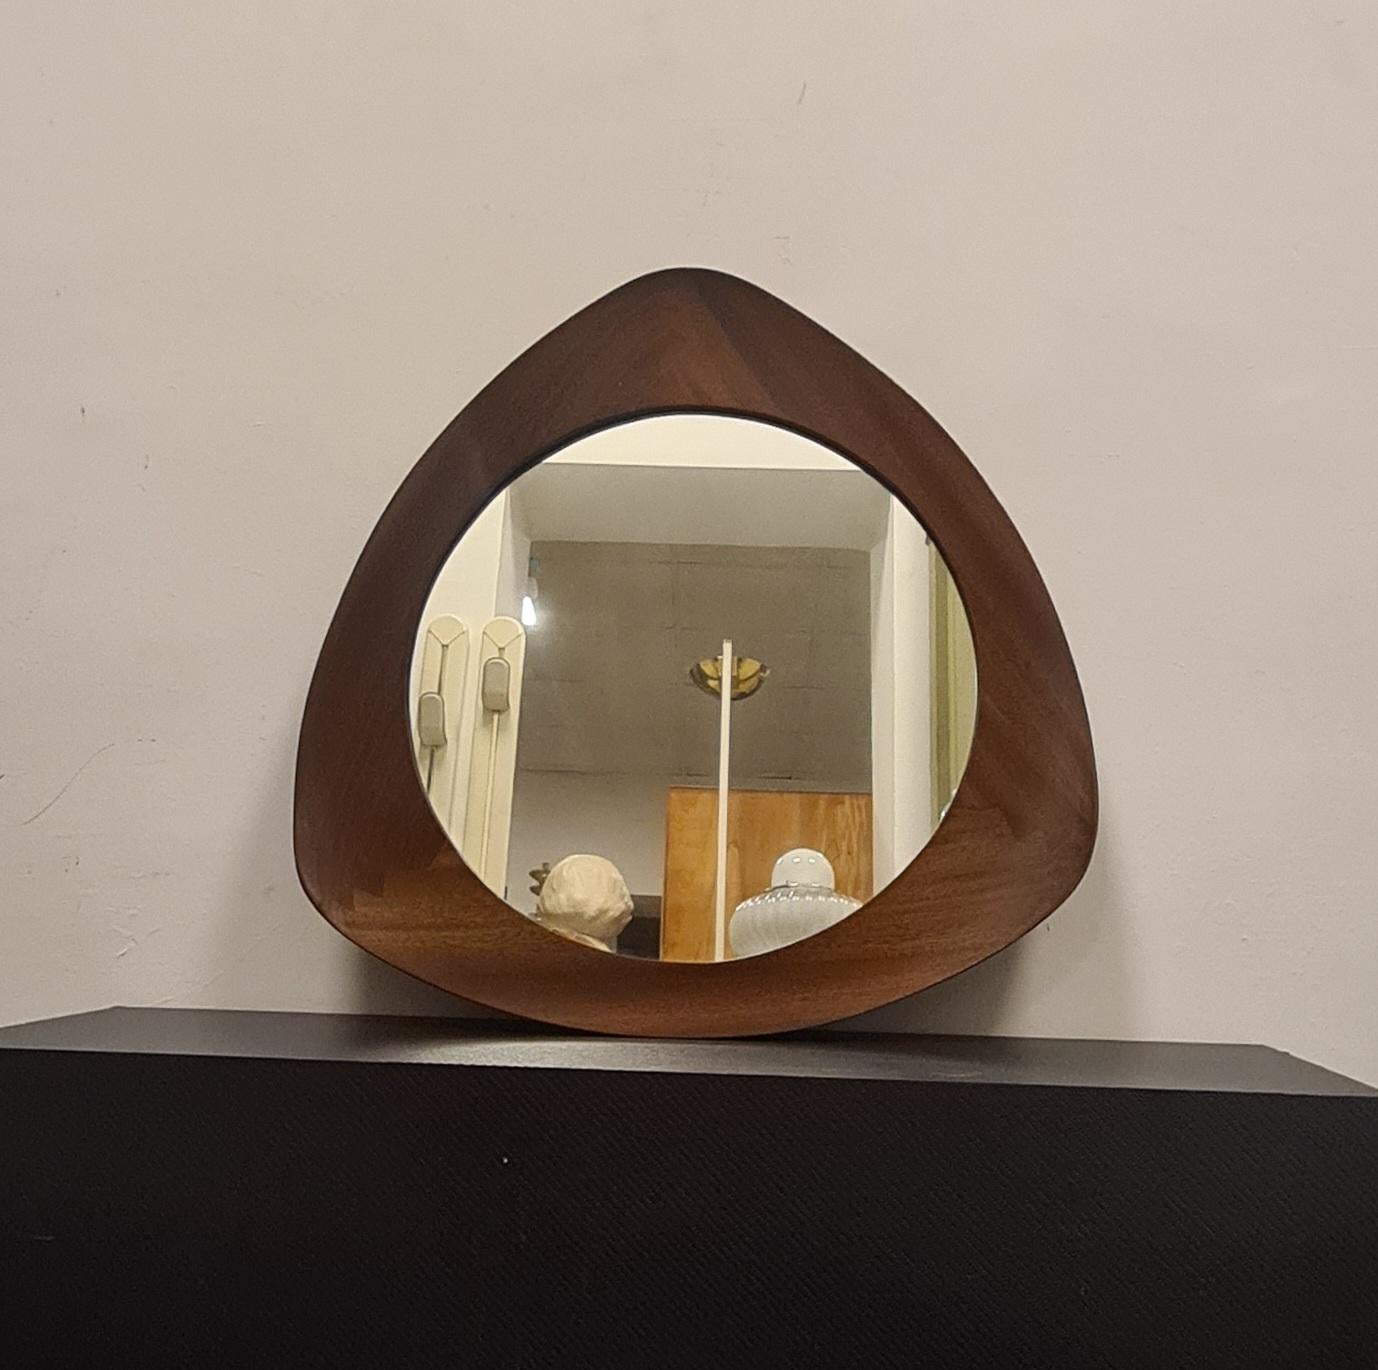 Spiegelmodell Oscar, entworfen von Campo & Graffi.

Ein raffinierter Spiegel mit geschwungener dreieckiger Form, der 1958 von Home Torino nach einem Entwurf von Franco Campo und Carlo Graffi hergestellt wurde.

Sehr selten, denn die Zusammenarbeit